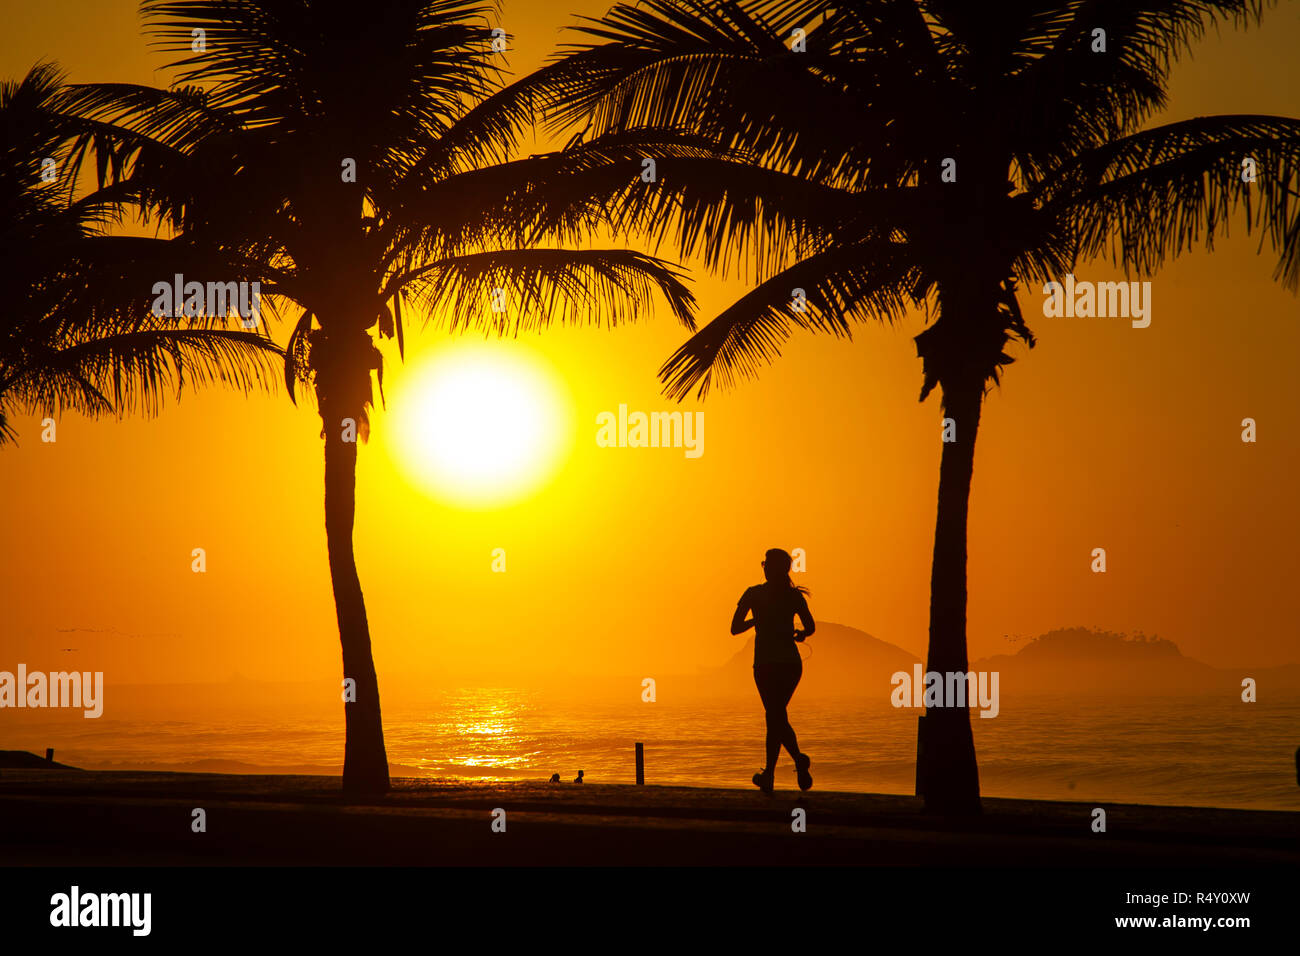 Woman doing exercise early in the morning at São Conrado beach, Rio de Janeiro, Brazil Stock Photo